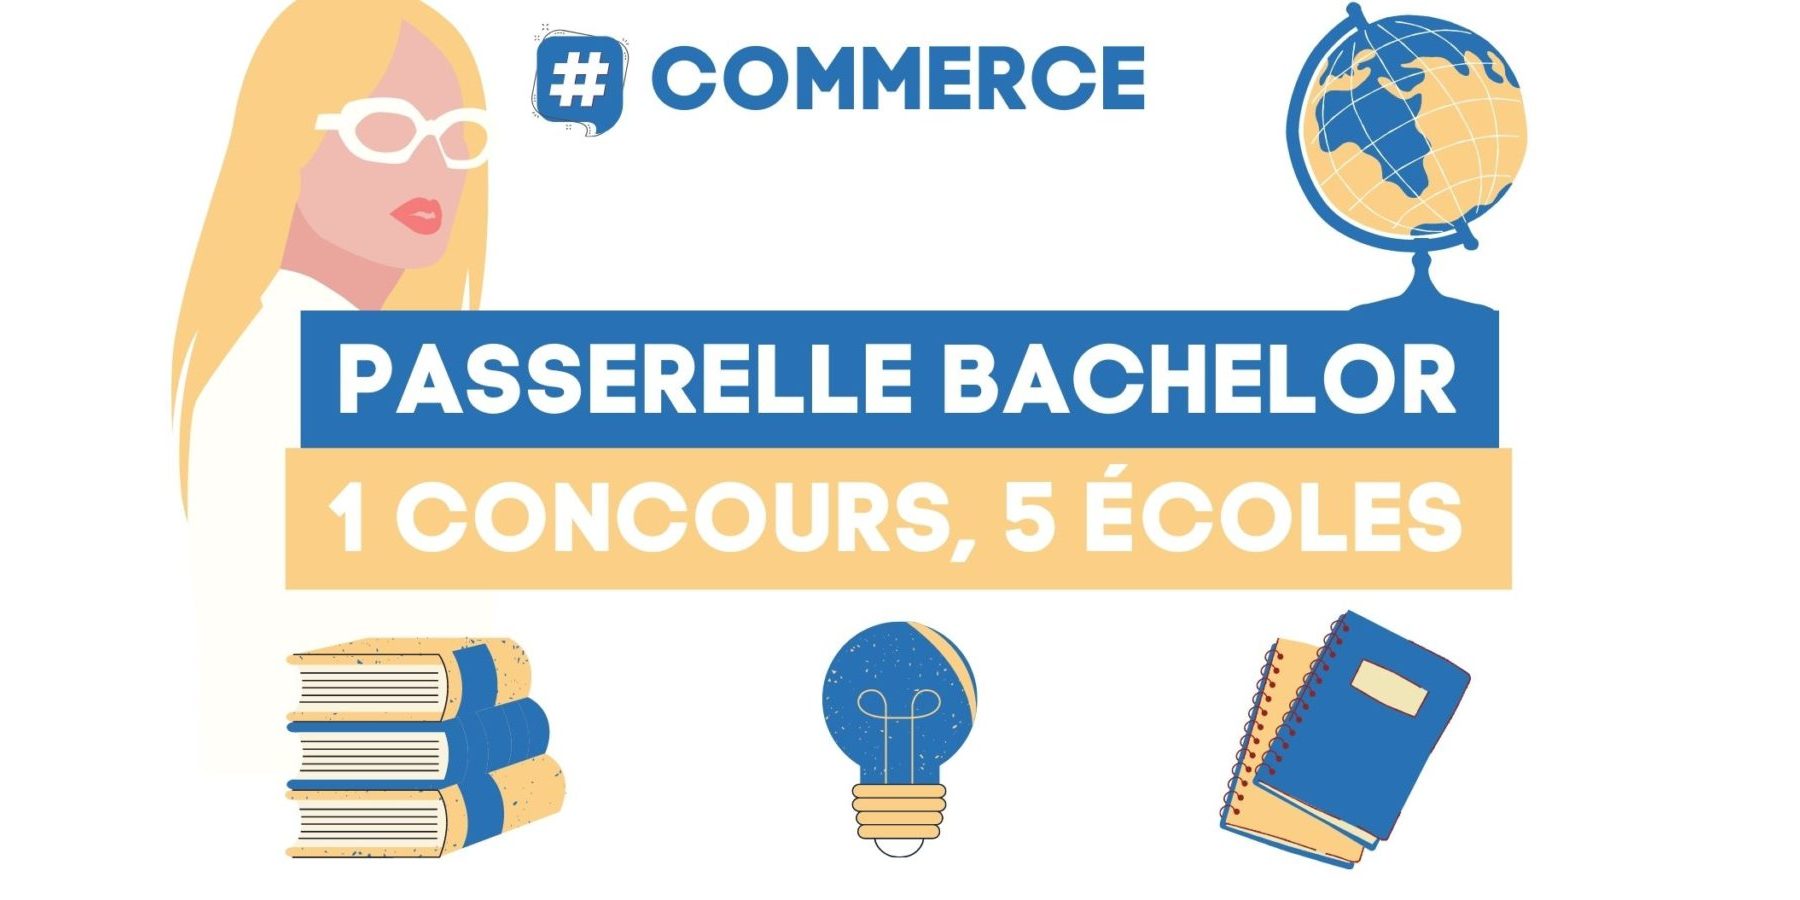 Concours Passerelle Bachelor 2021 : dates, prix et réforme ...